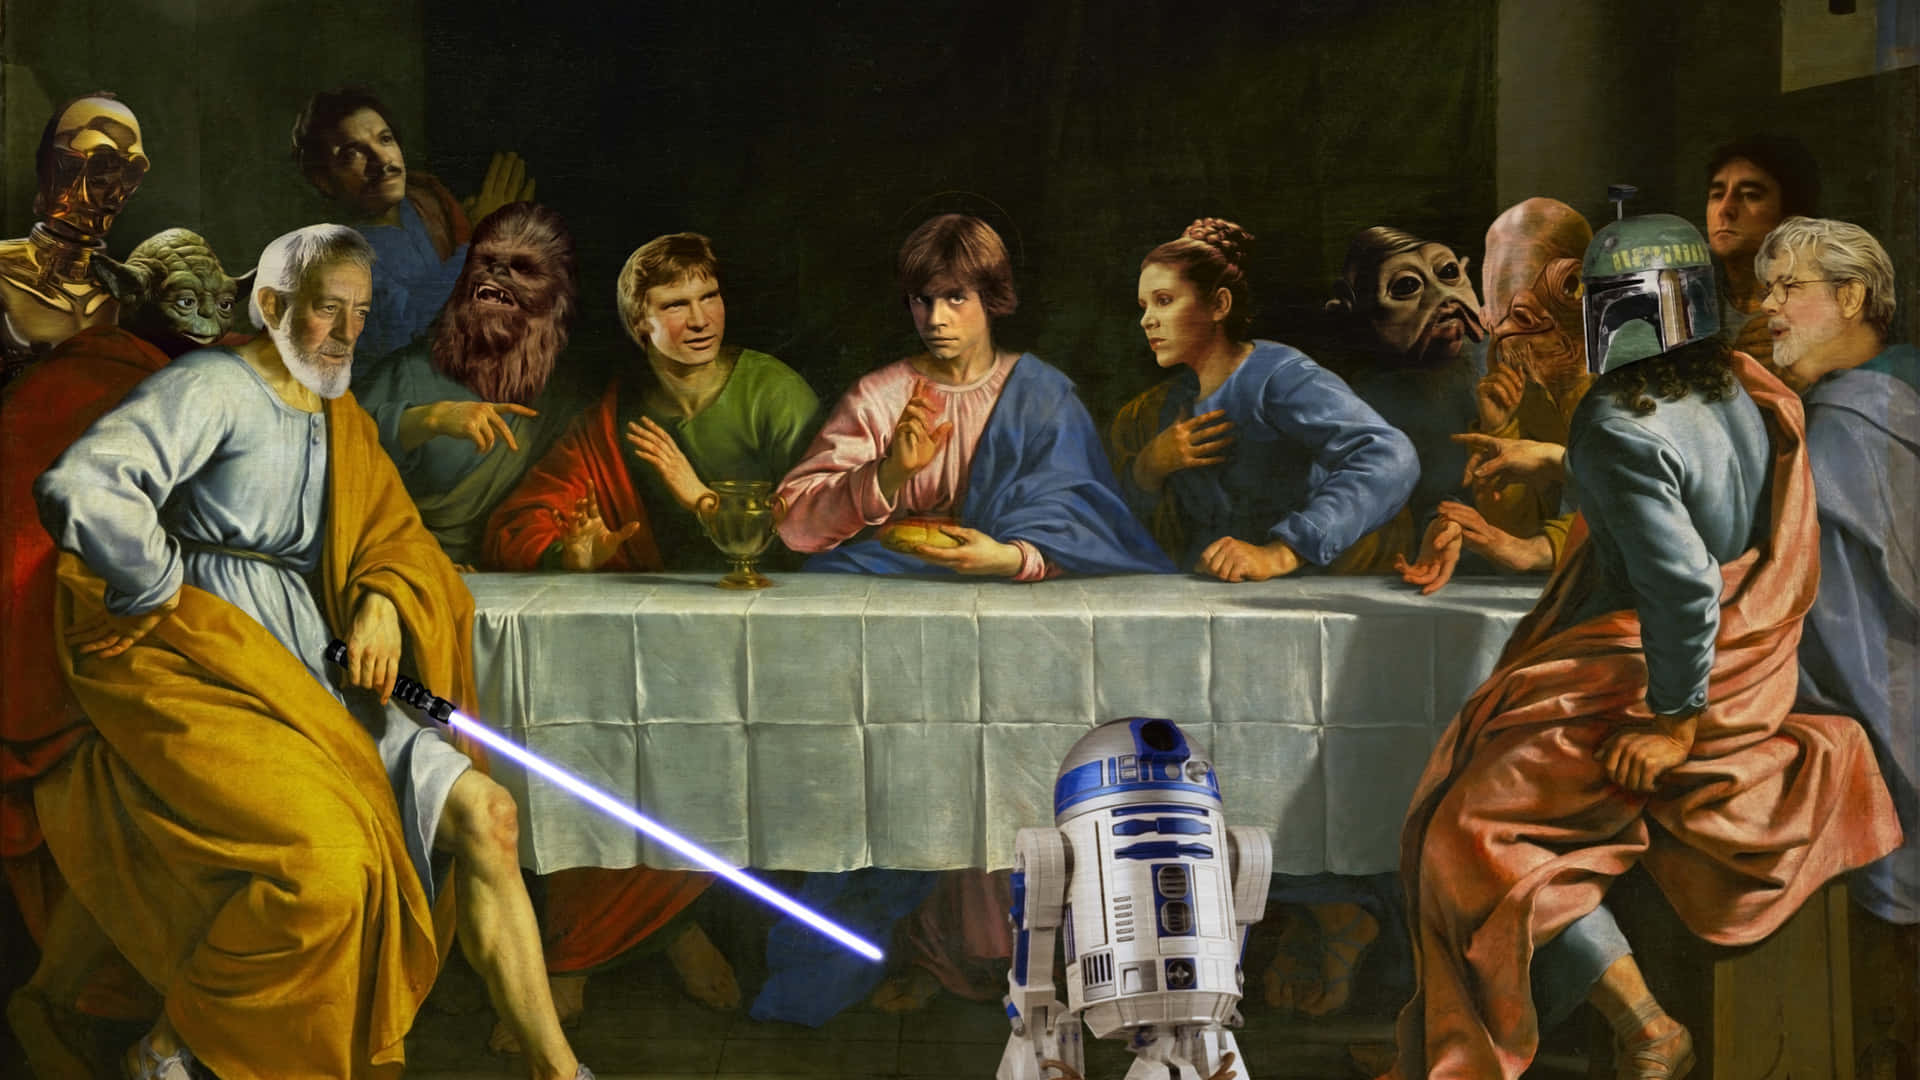 Klassisk Star Wars kommer til live! Wallpaper